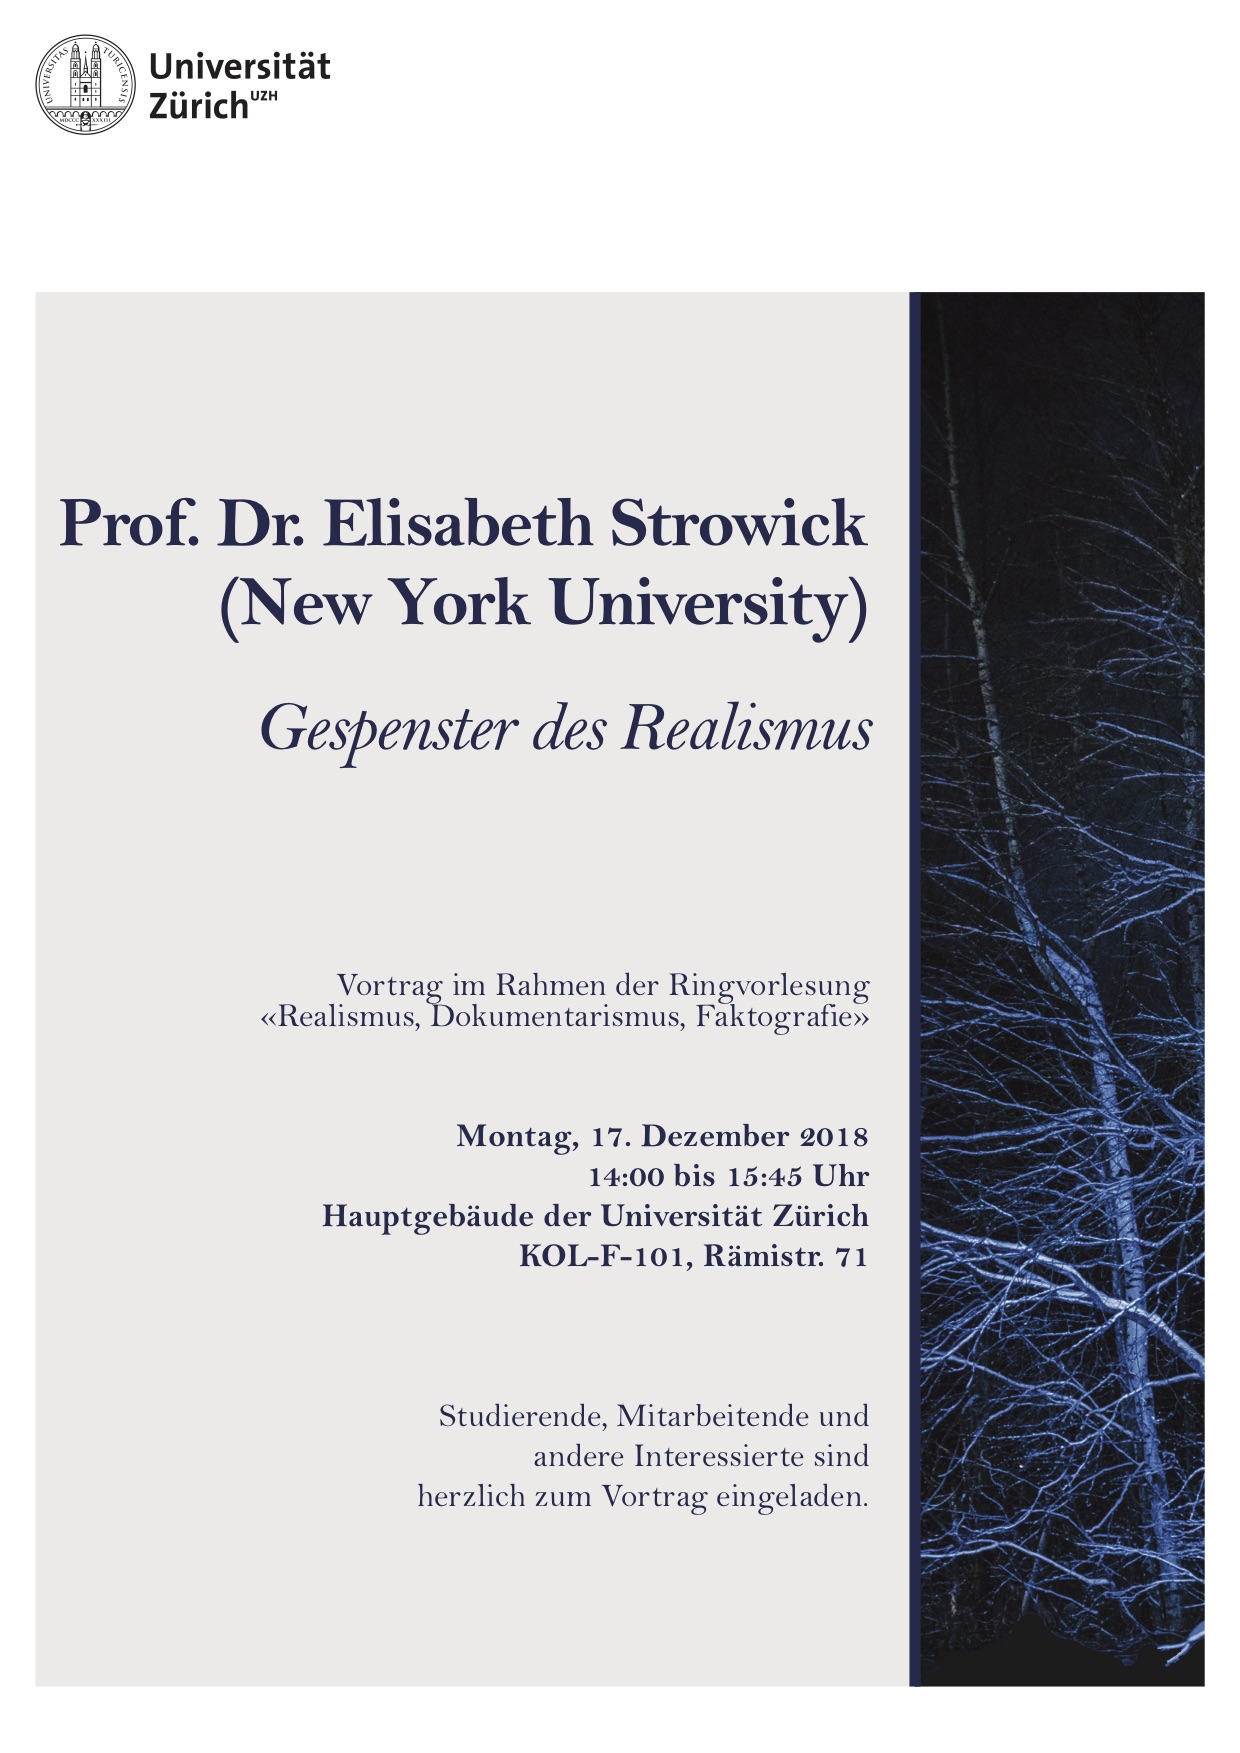 Prof. Dr. Elisabeth Strowick (New York University) "Gespenster des Realismus"